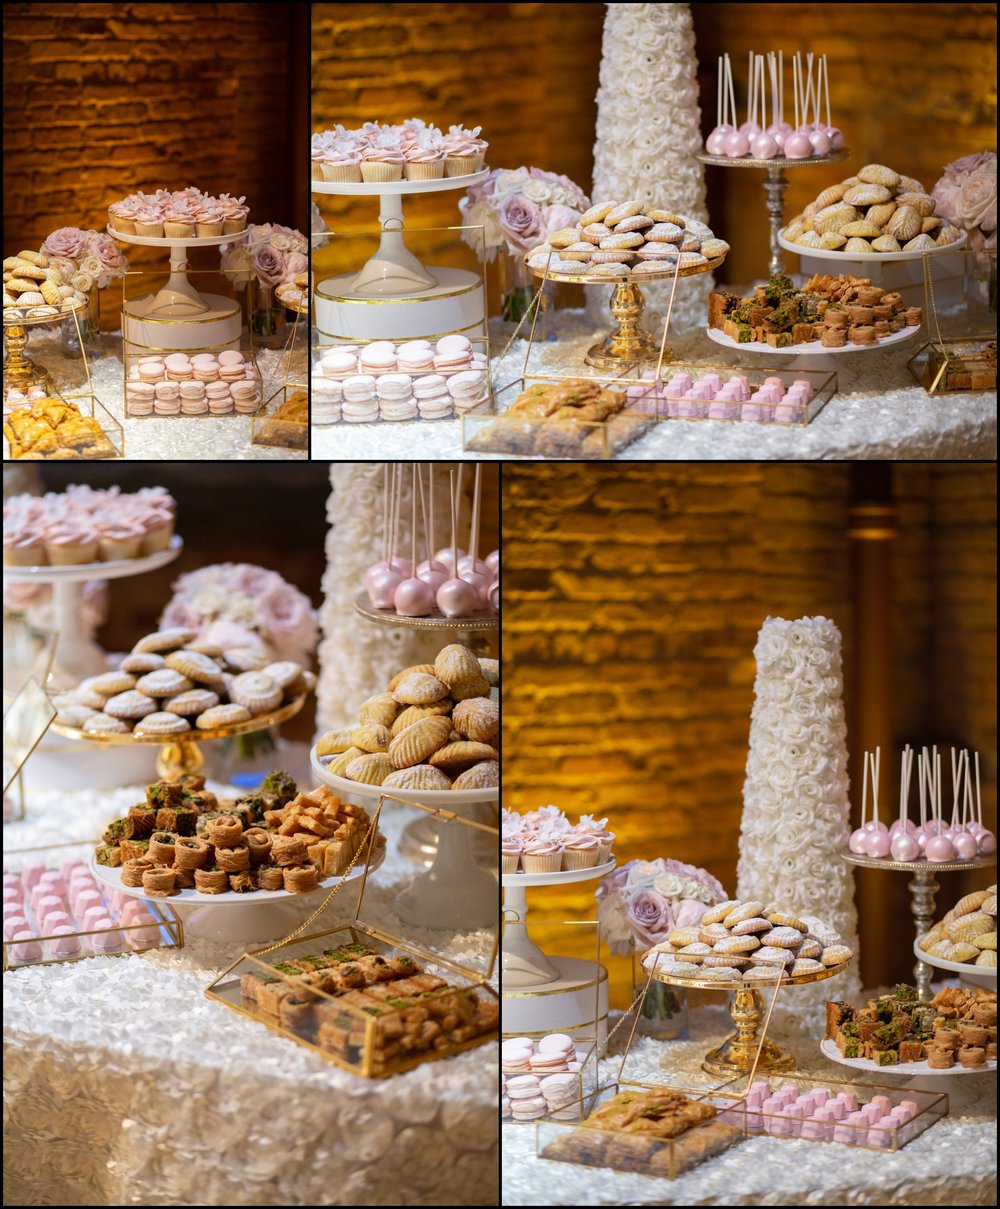  Wedding Cake and Dessert Table Display 